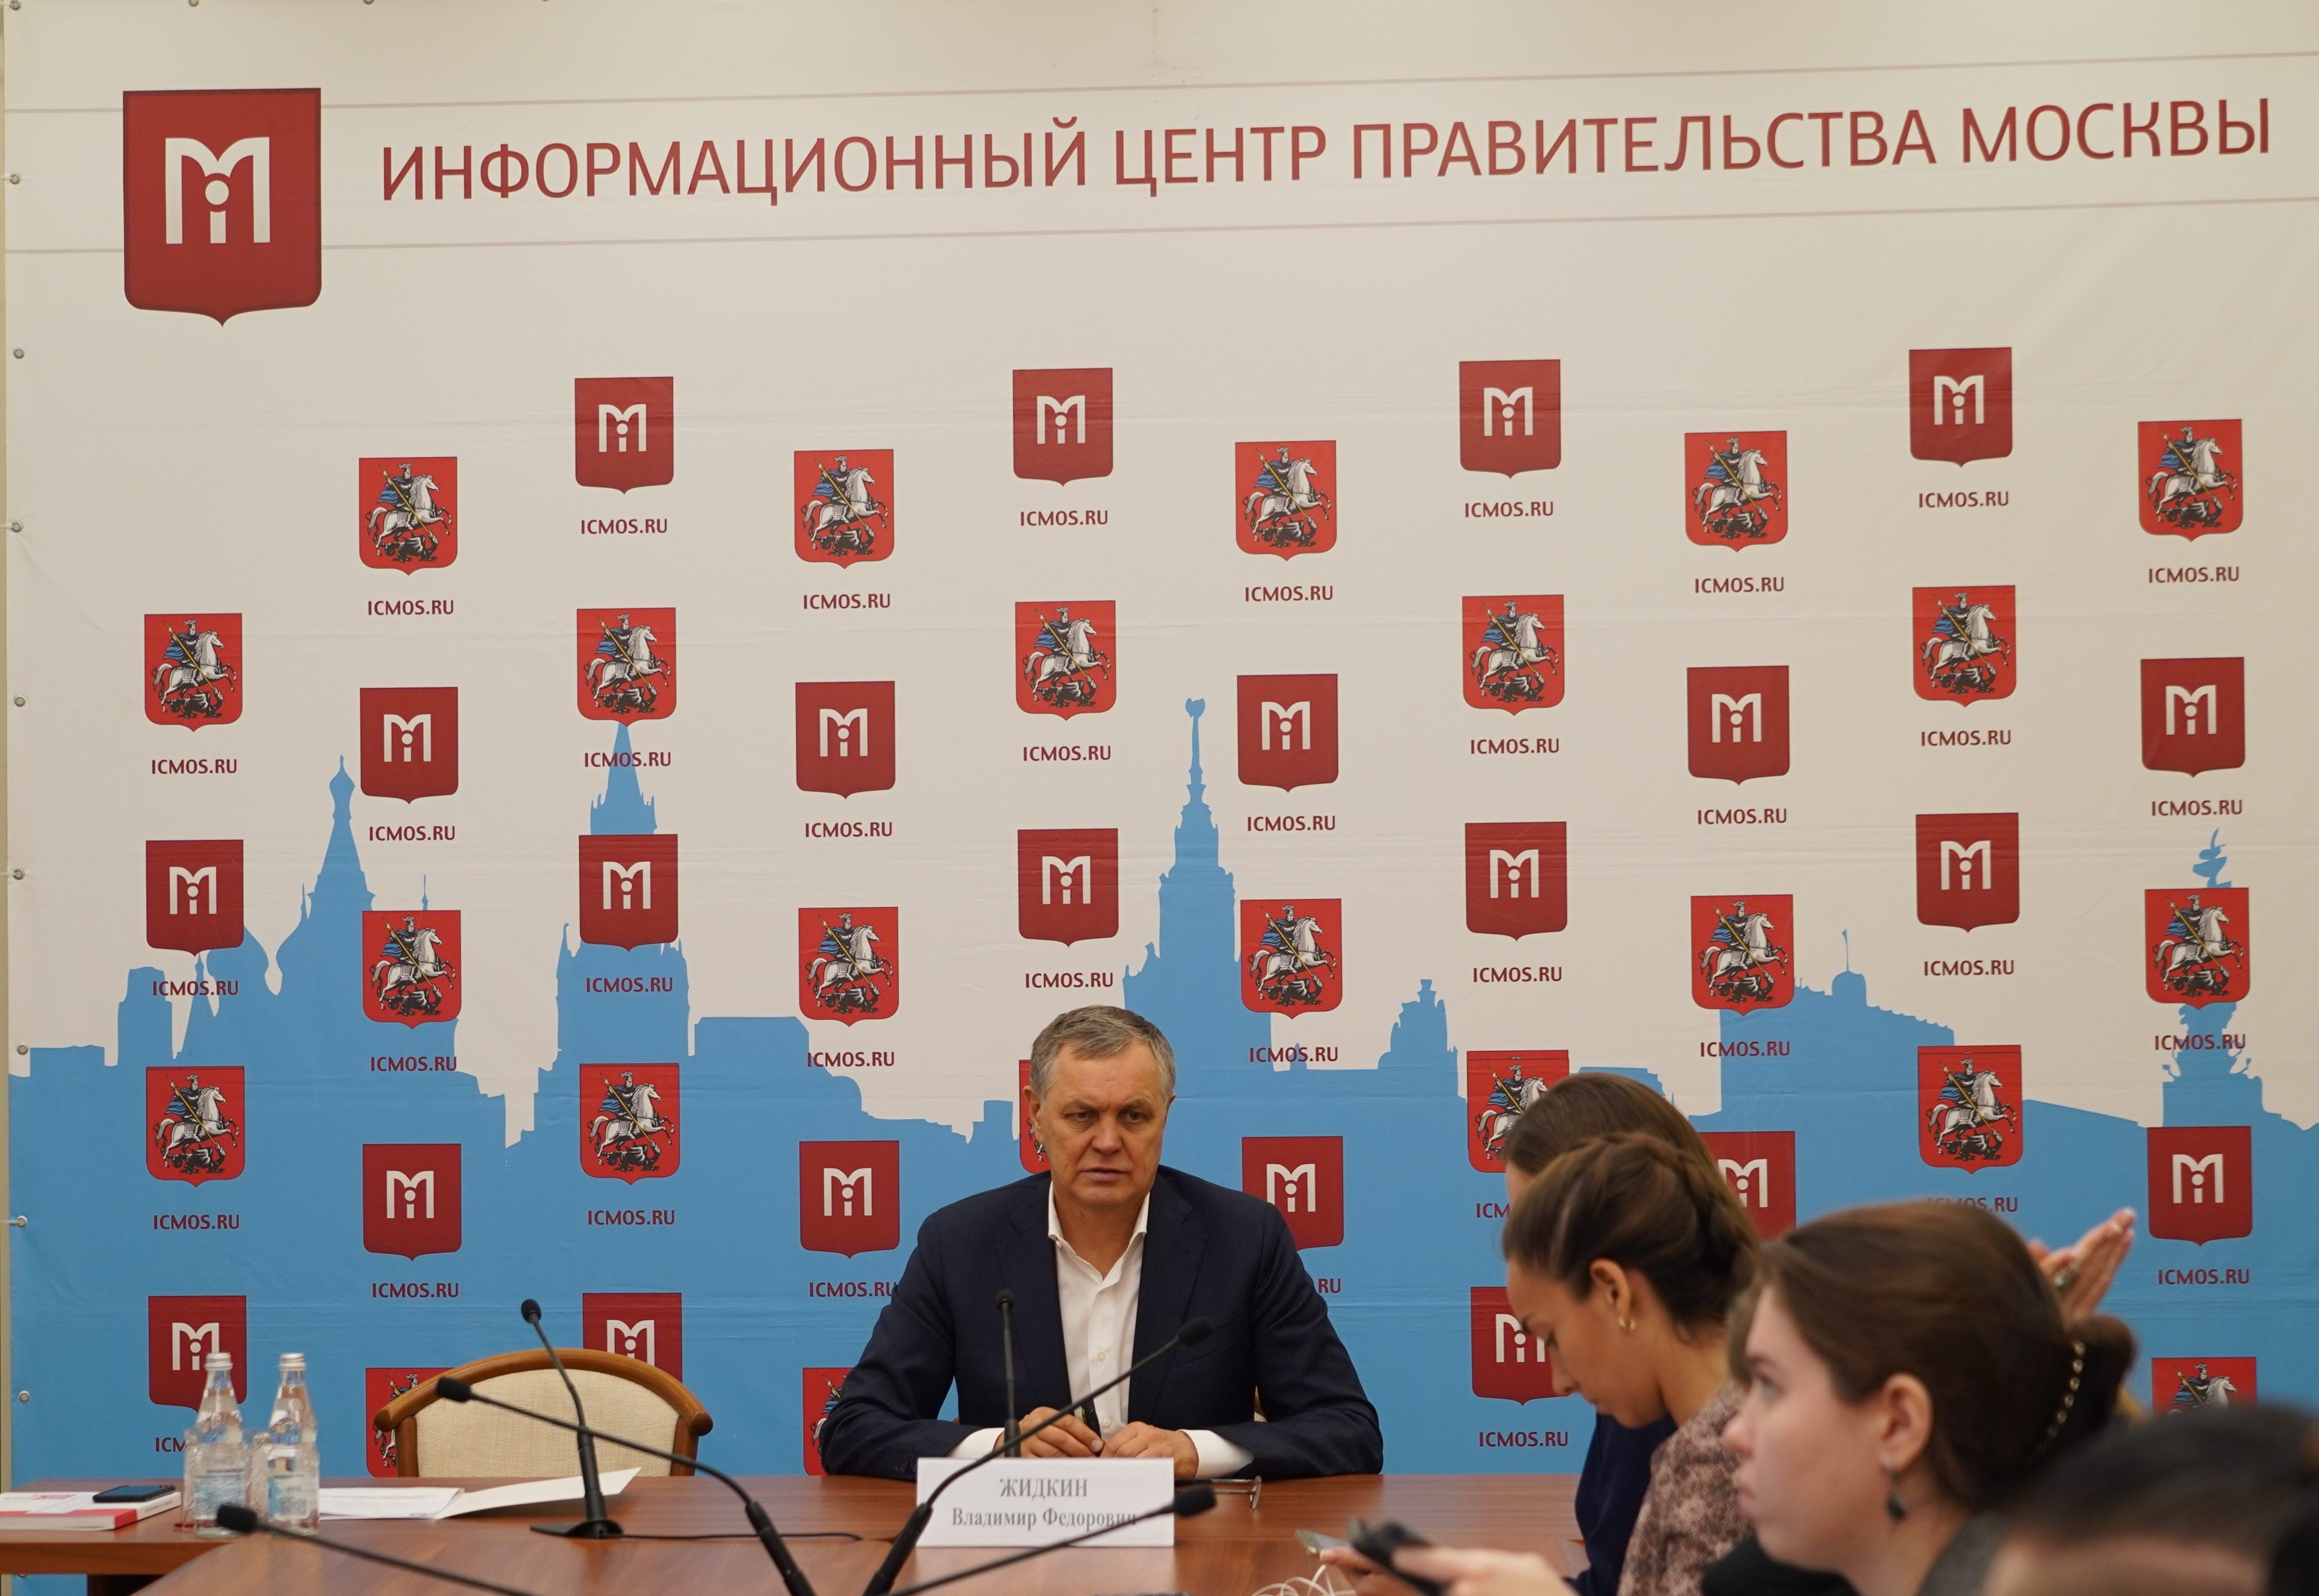 Пресс-конференция «Новая Москва: итоги 9 месяцев и перспективы» состоялась в Москве